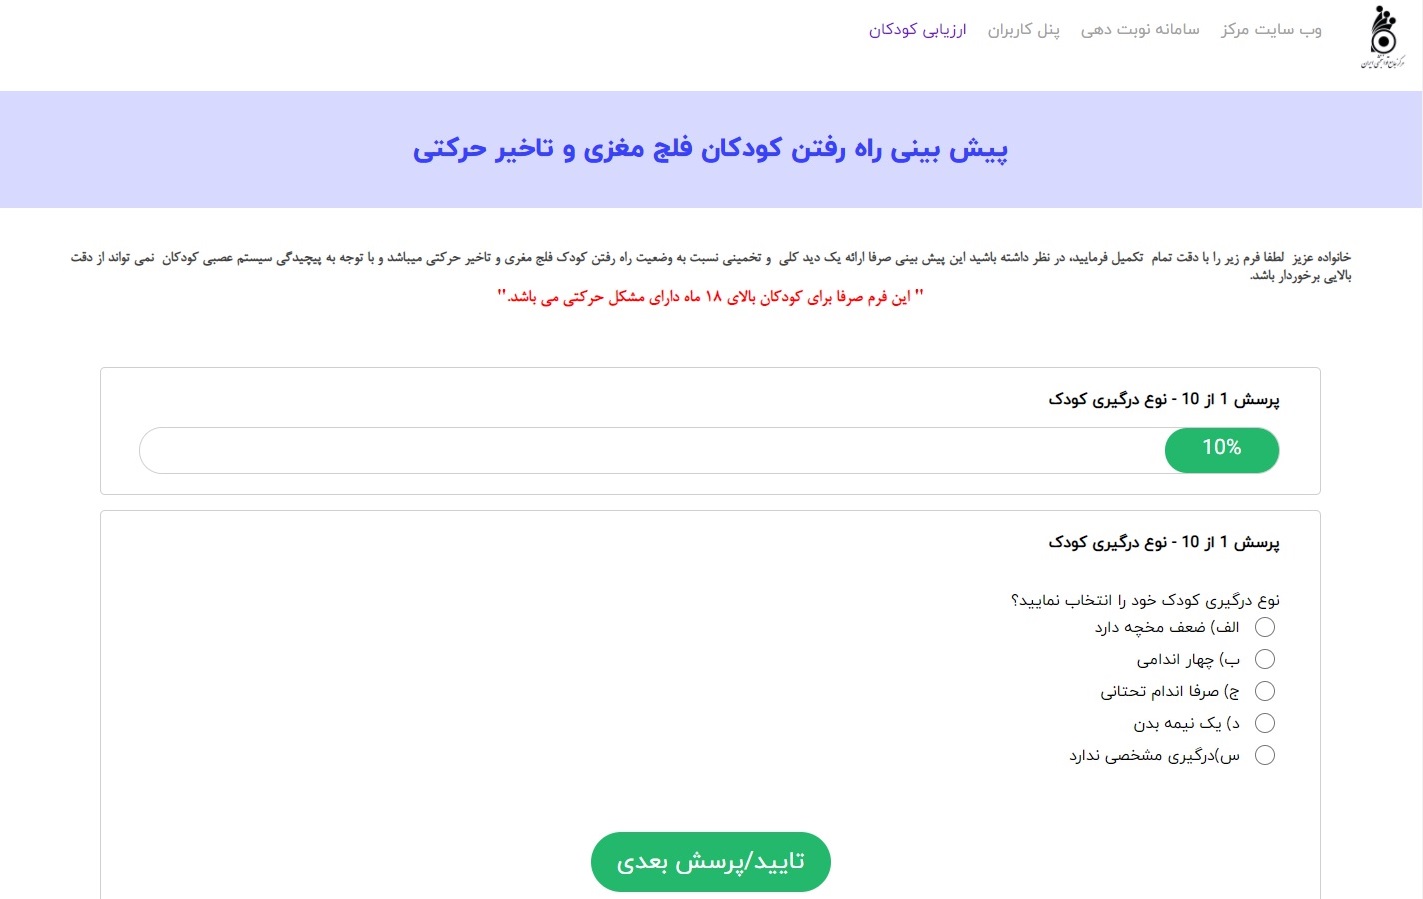 سامانه ارزیابی کودکان مرکز توانبخشی جامع ایران